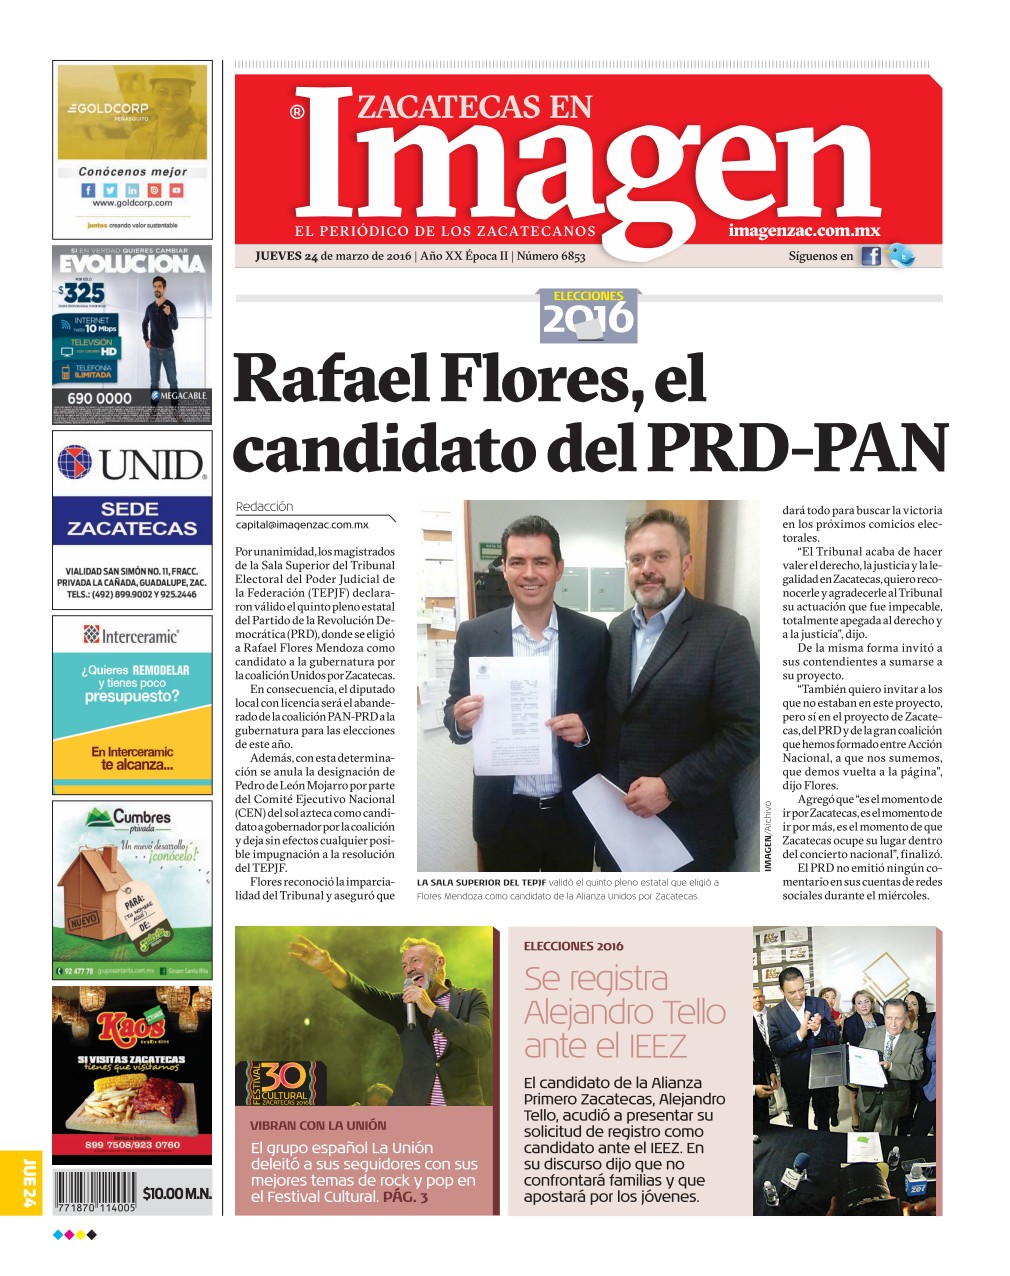 Imagen Zacatecas edición del 24 de Marzo 2016